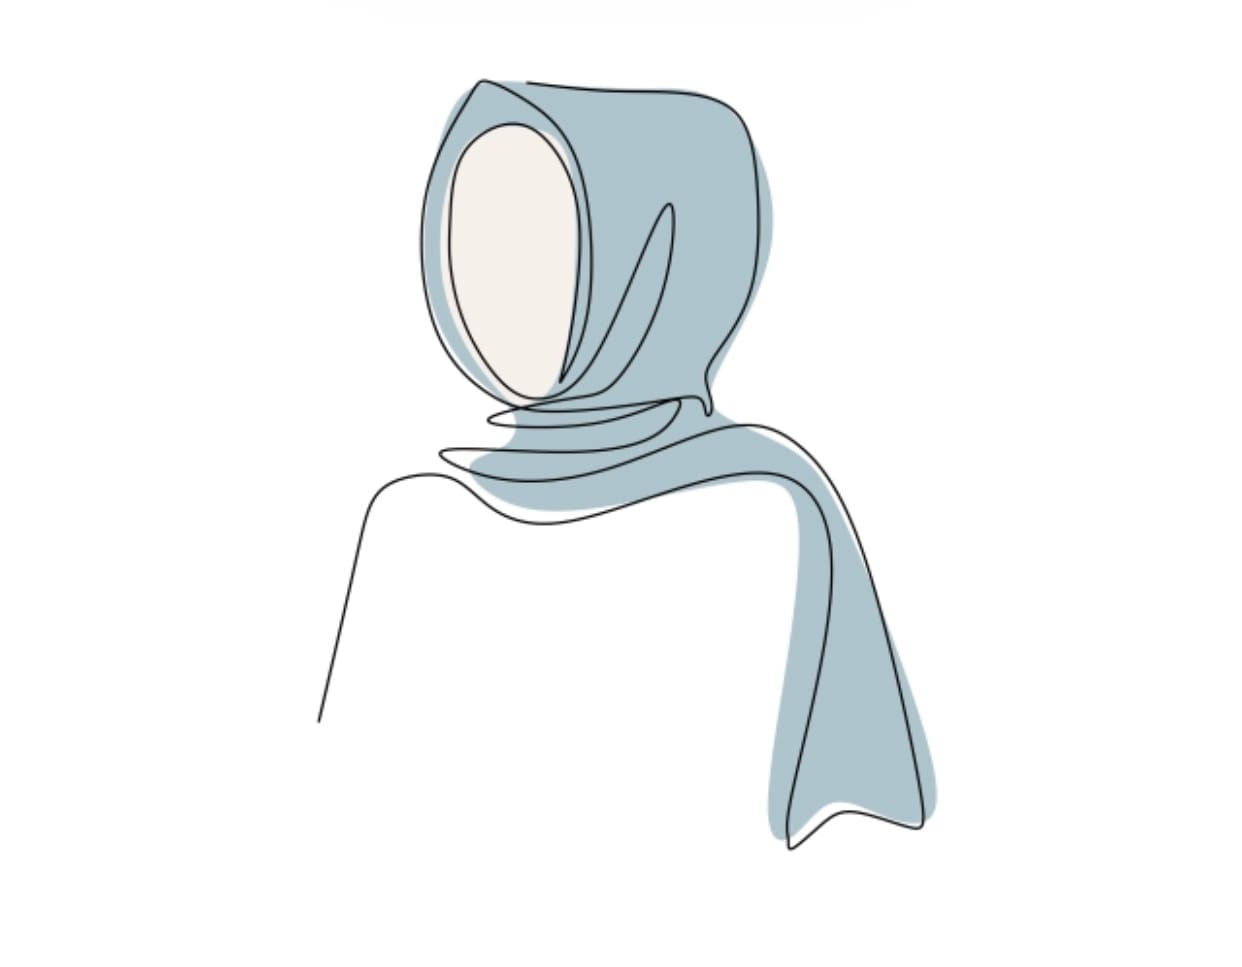 Mastoura Hijab